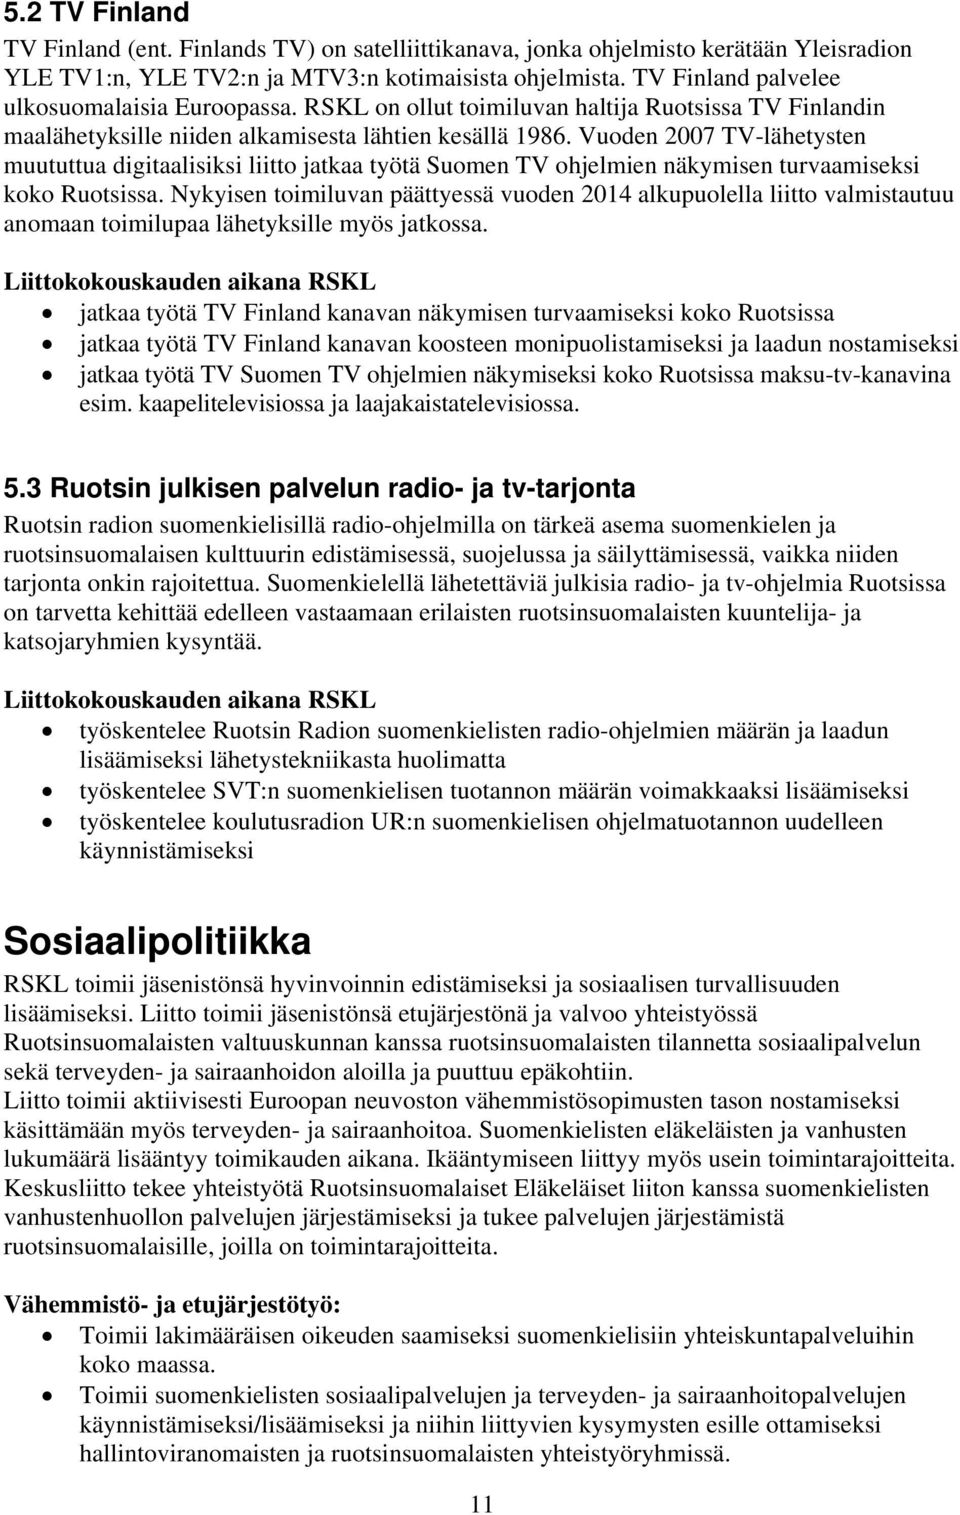 Vuoden 2007 TV-lähetysten muututtua digitaalisiksi liitto jatkaa työtä Suomen TV ohjelmien näkymisen turvaamiseksi koko Ruotsissa.